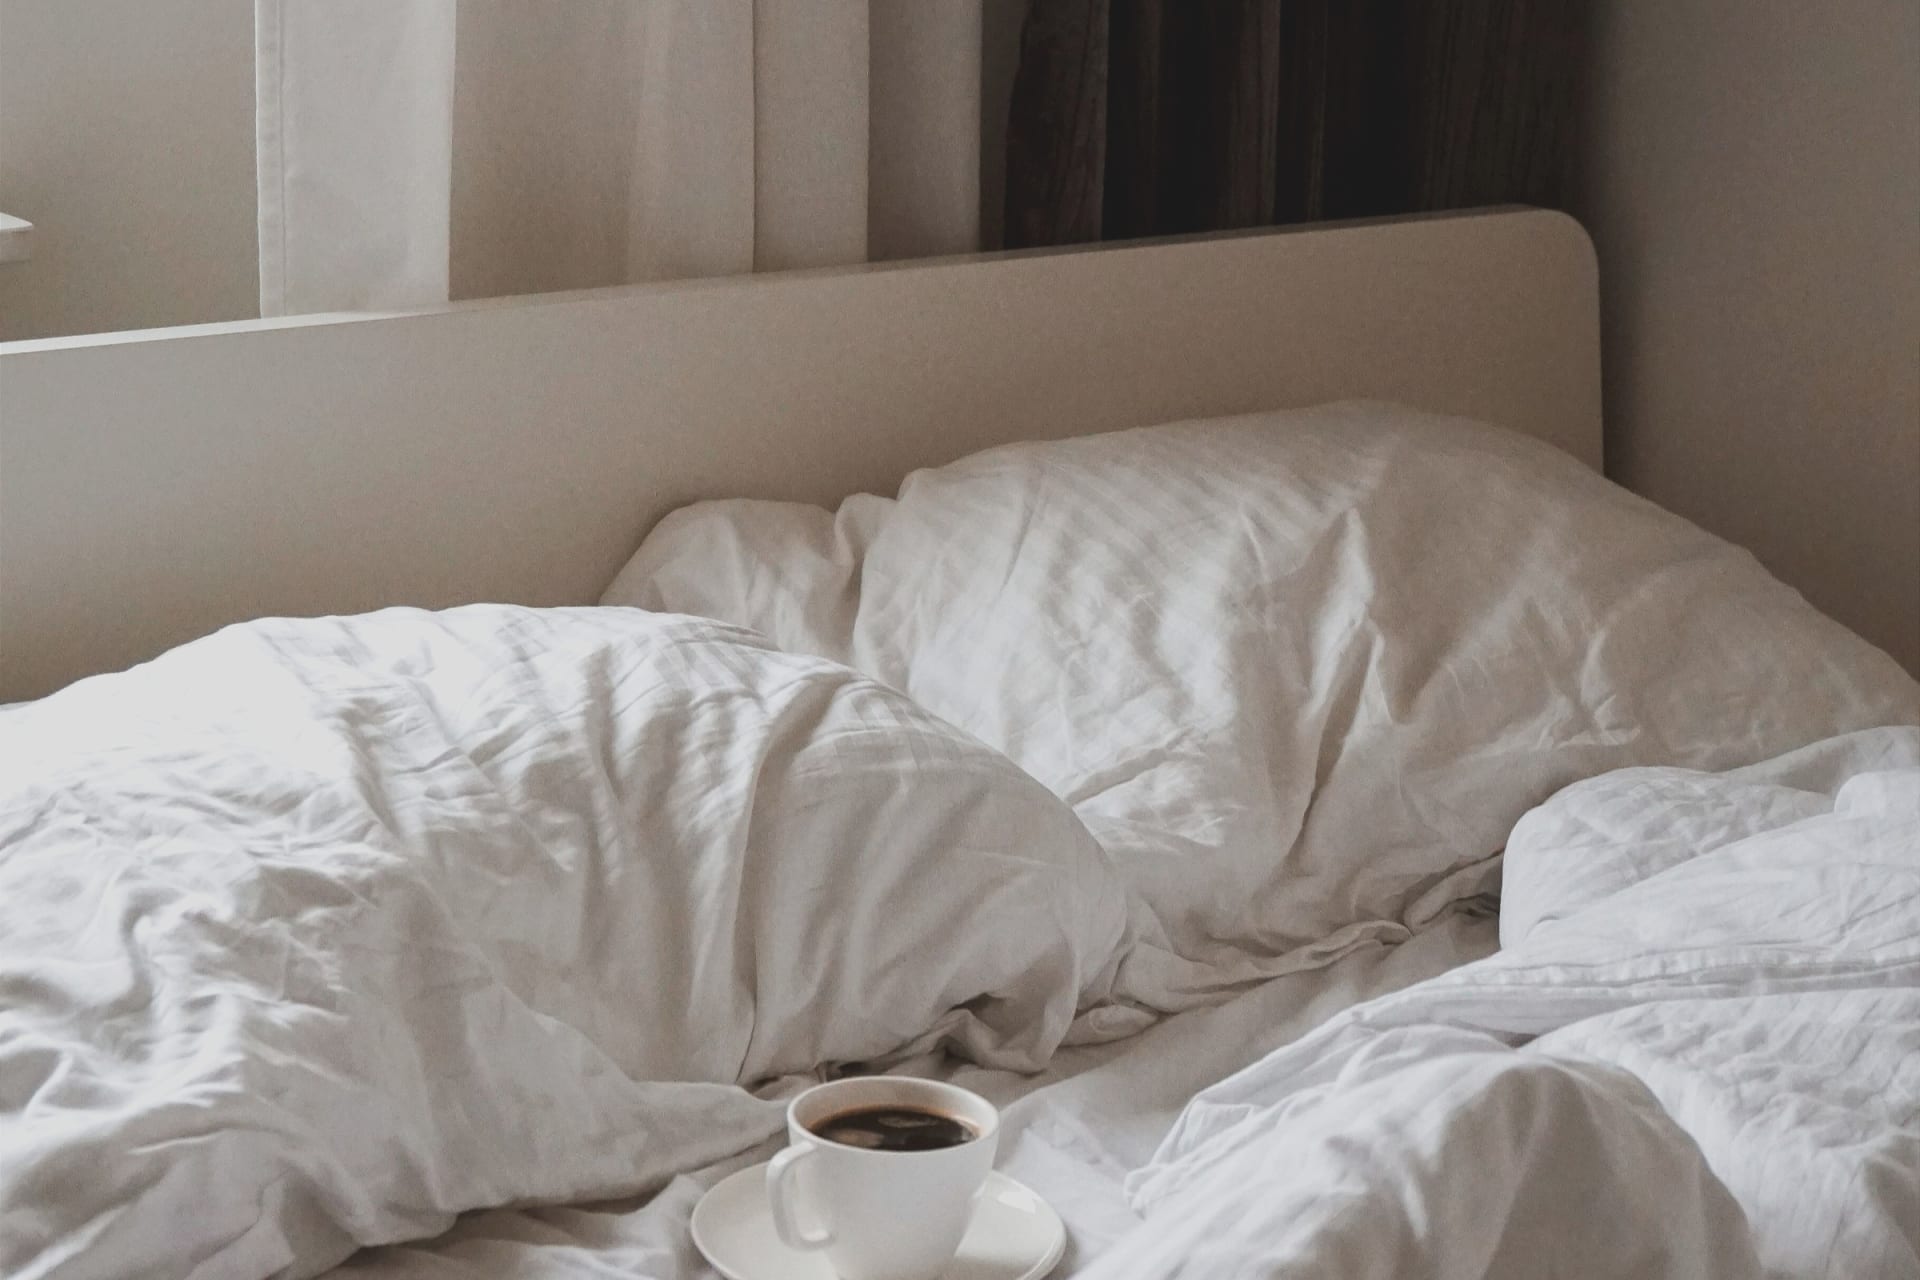 Hausstaubmilben leben vor allem in Matratzen und in der Bettwäsche, wo eine perfekte Umgebung für sie besteht. 